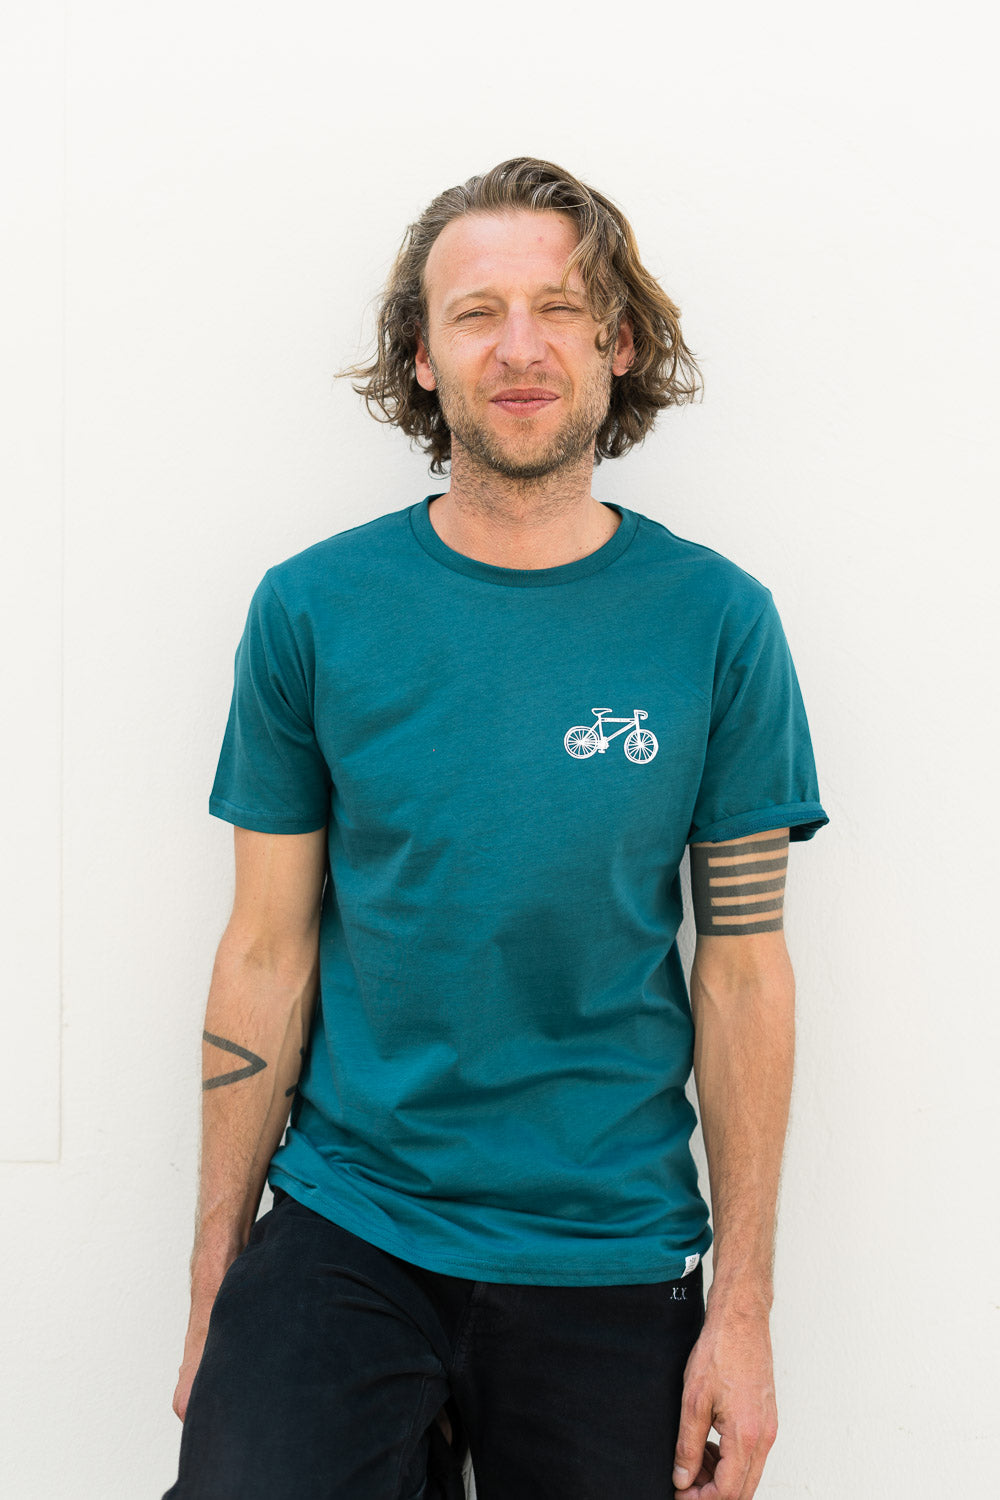 Mann mit nachhaltigen grünen Baumwoll shirt mit Fahrradmotiv drinnen